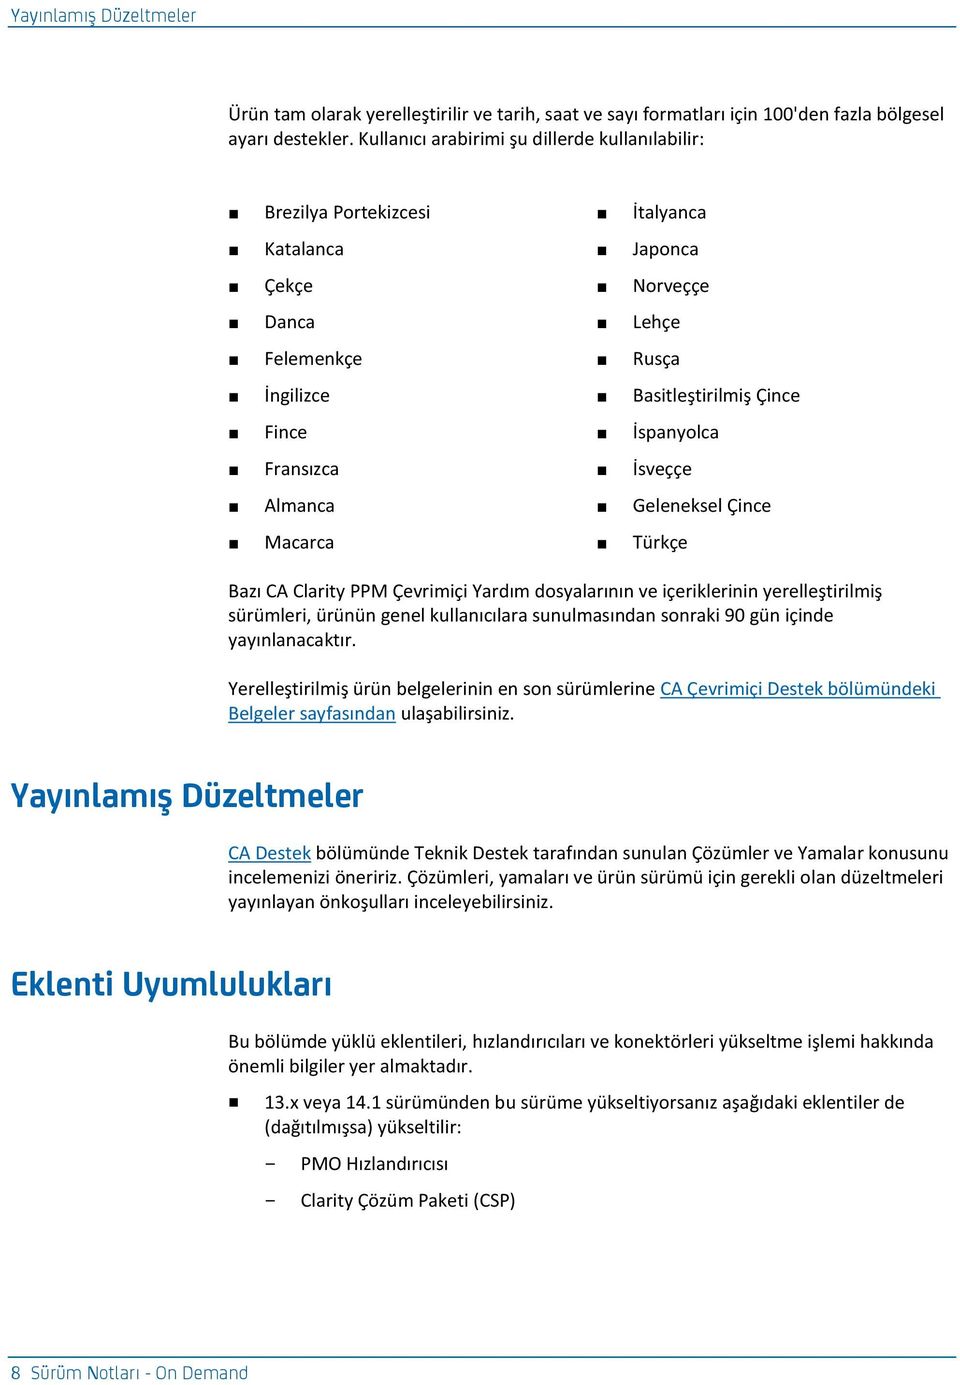 Fransızca İsveççe Almanca Geleneksel Çince Macarca Türkçe Bazı CA Clarity PPM Çevrimiçi Yardım dosyalarının ve içeriklerinin yerelleştirilmiş sürümleri, ürünün genel kullanıcılara sunulmasından